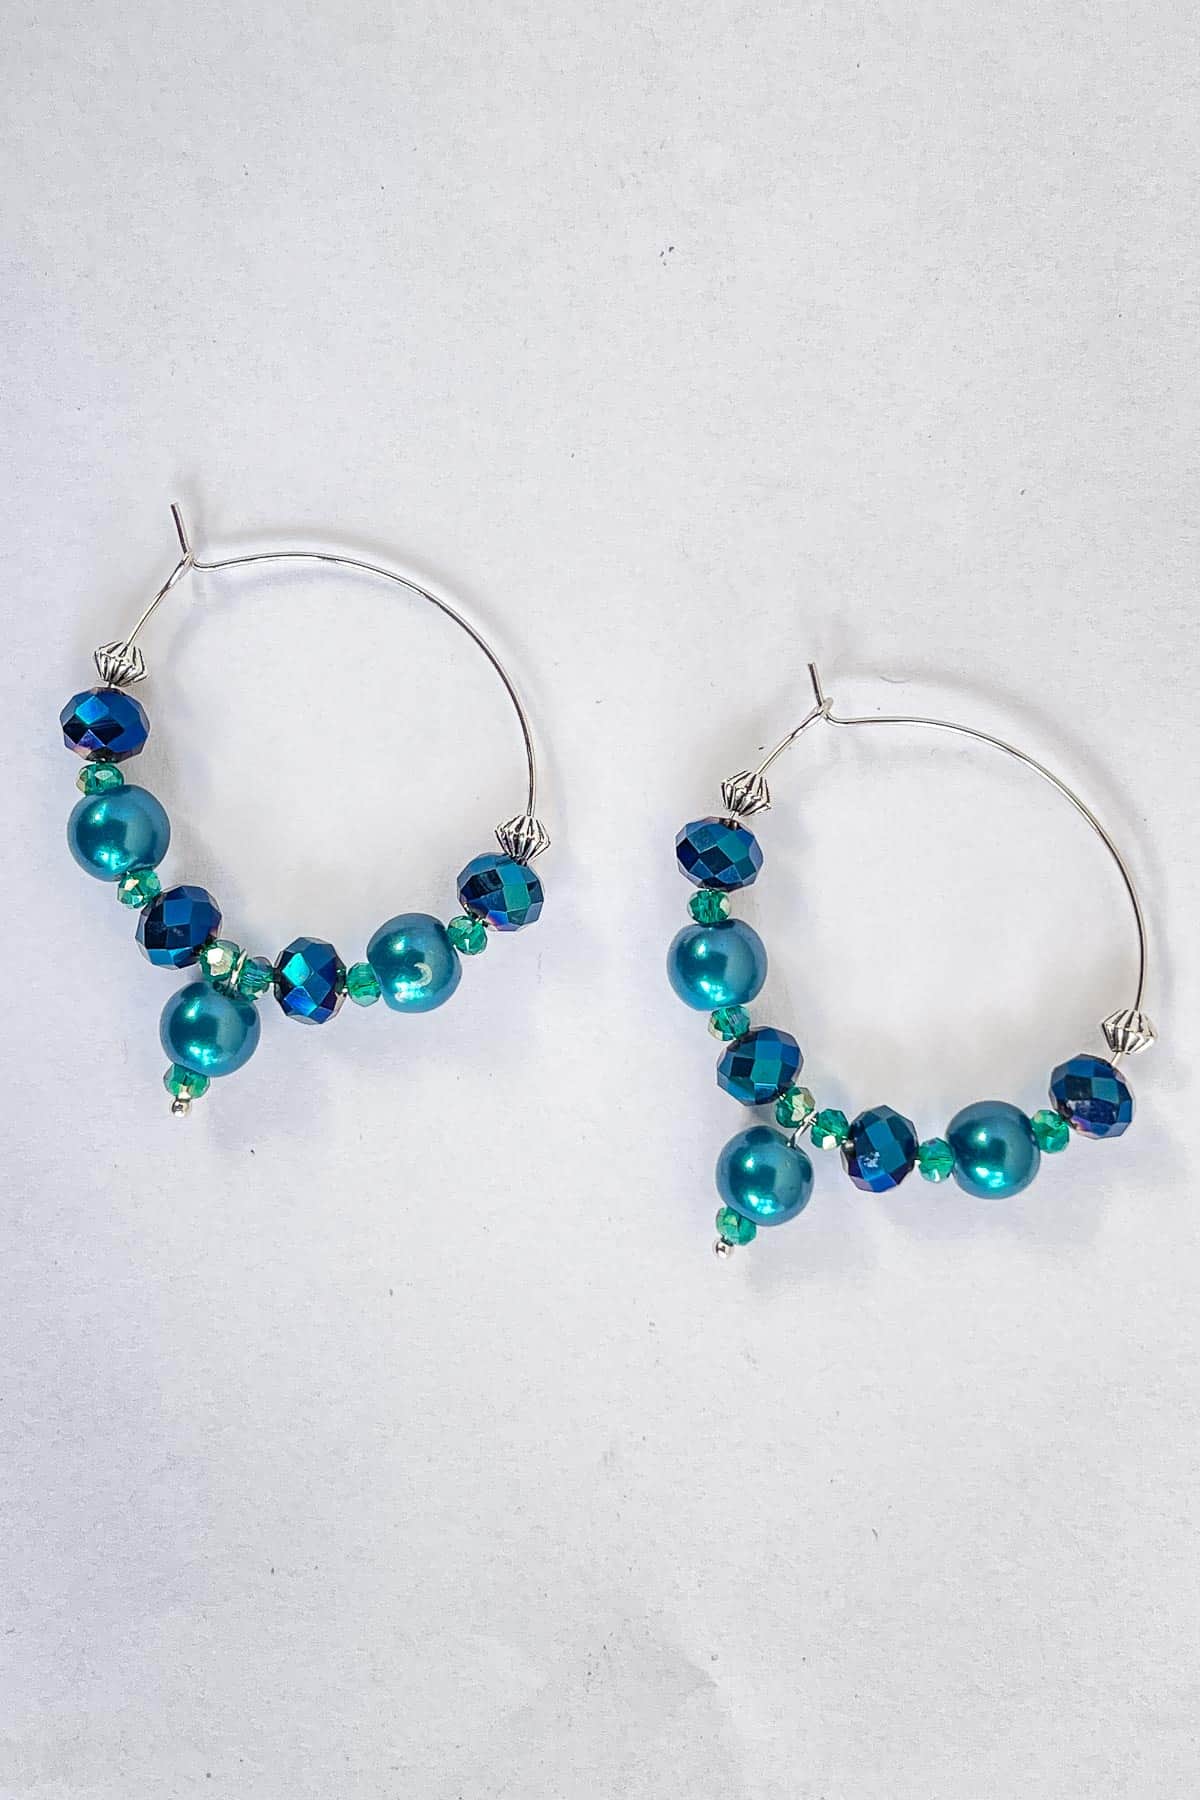 A pair of blue beaded hoop earrings in silver.